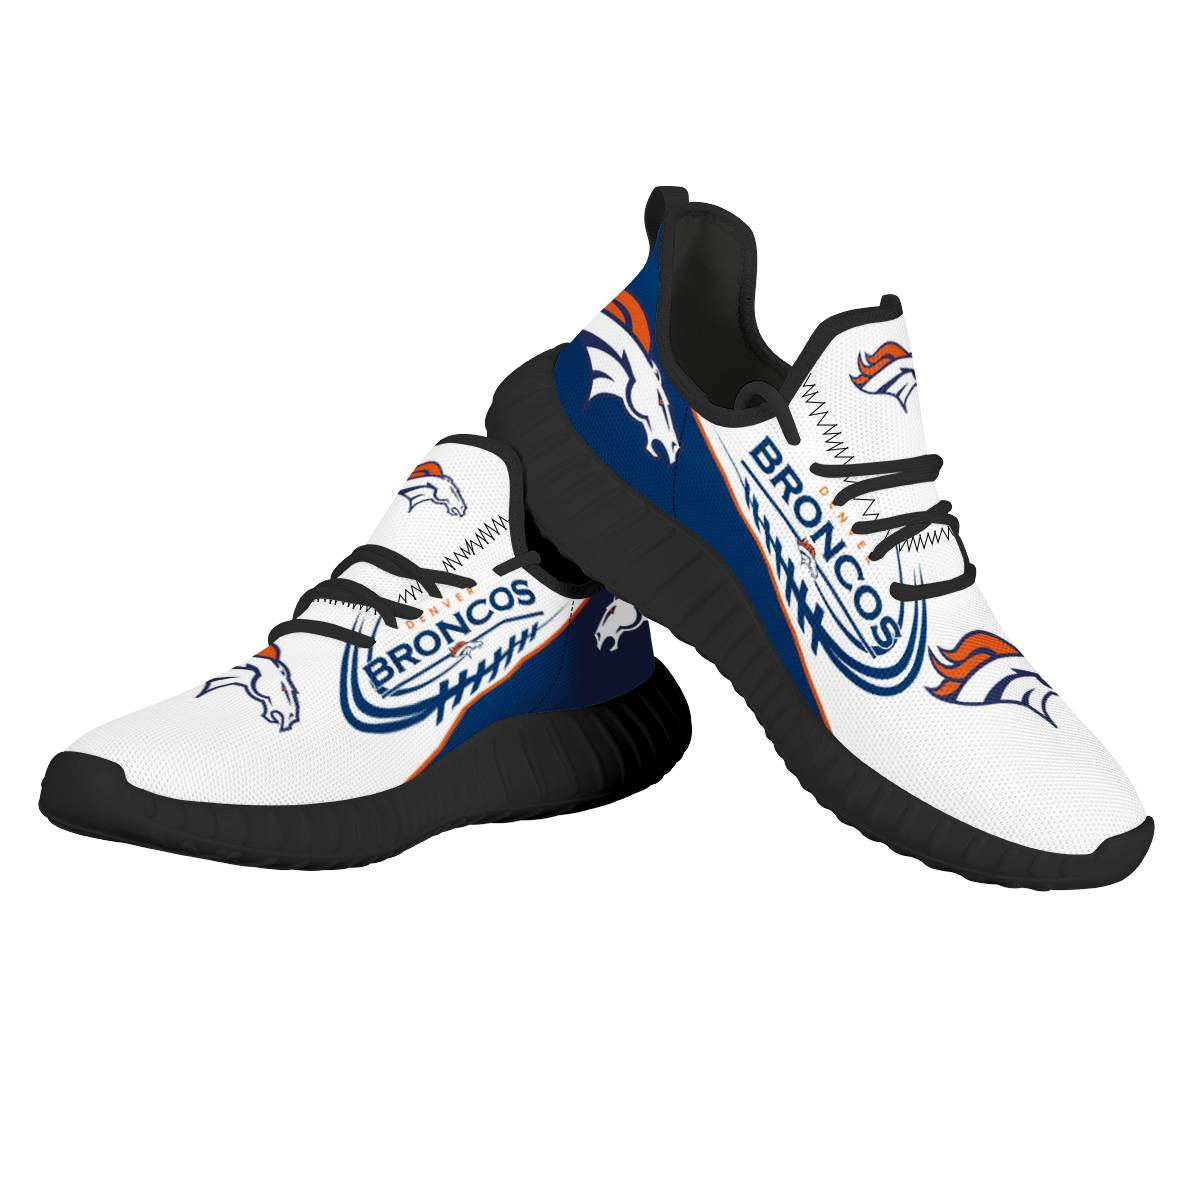 Men's Denver Broncos Mesh Knit Sneakers/Shoes 012